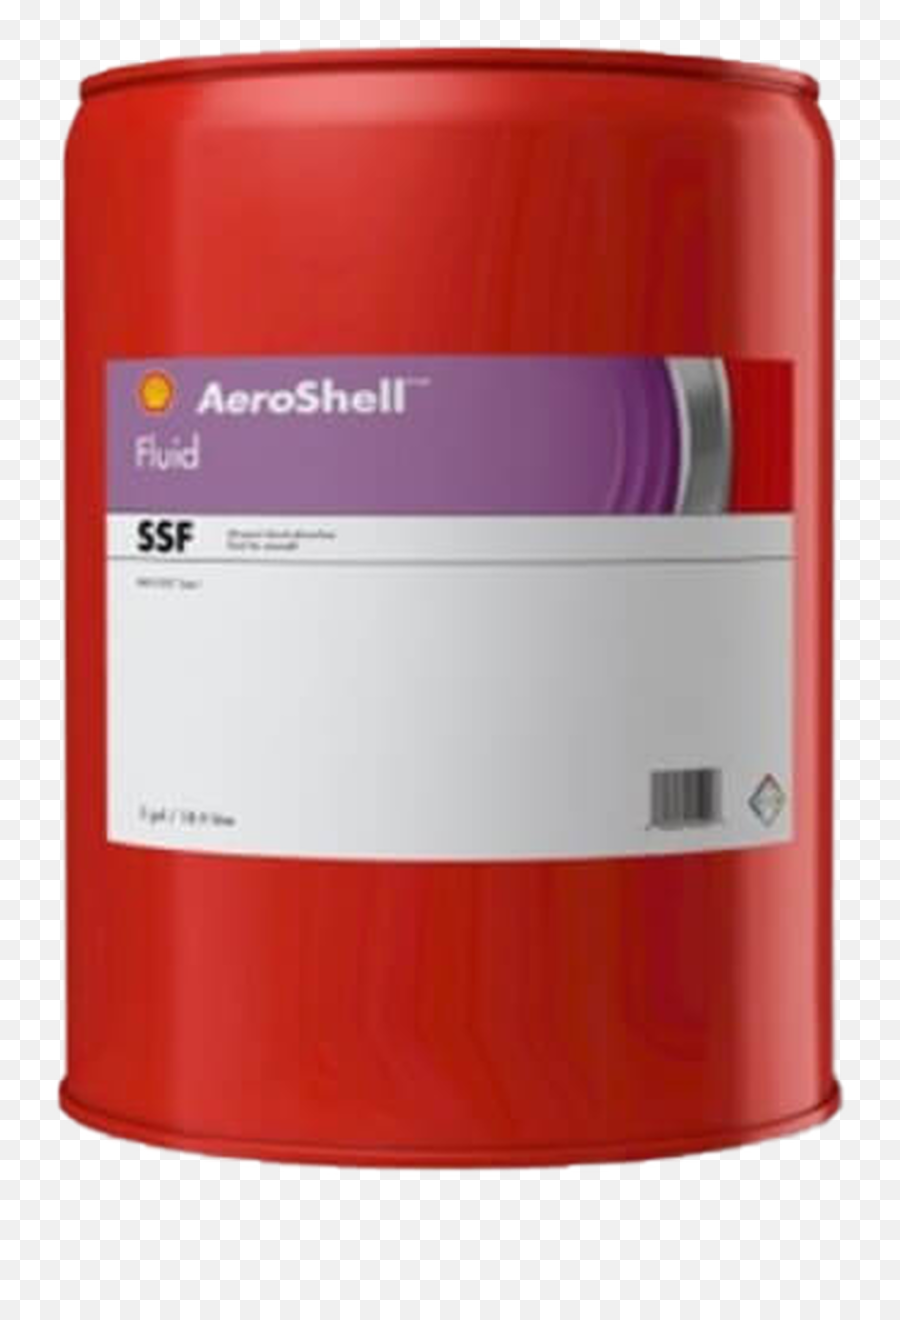 Aeroshell Ssf - 5usg Aeroshell Fluid 5m Png,Axial Icon Shocks